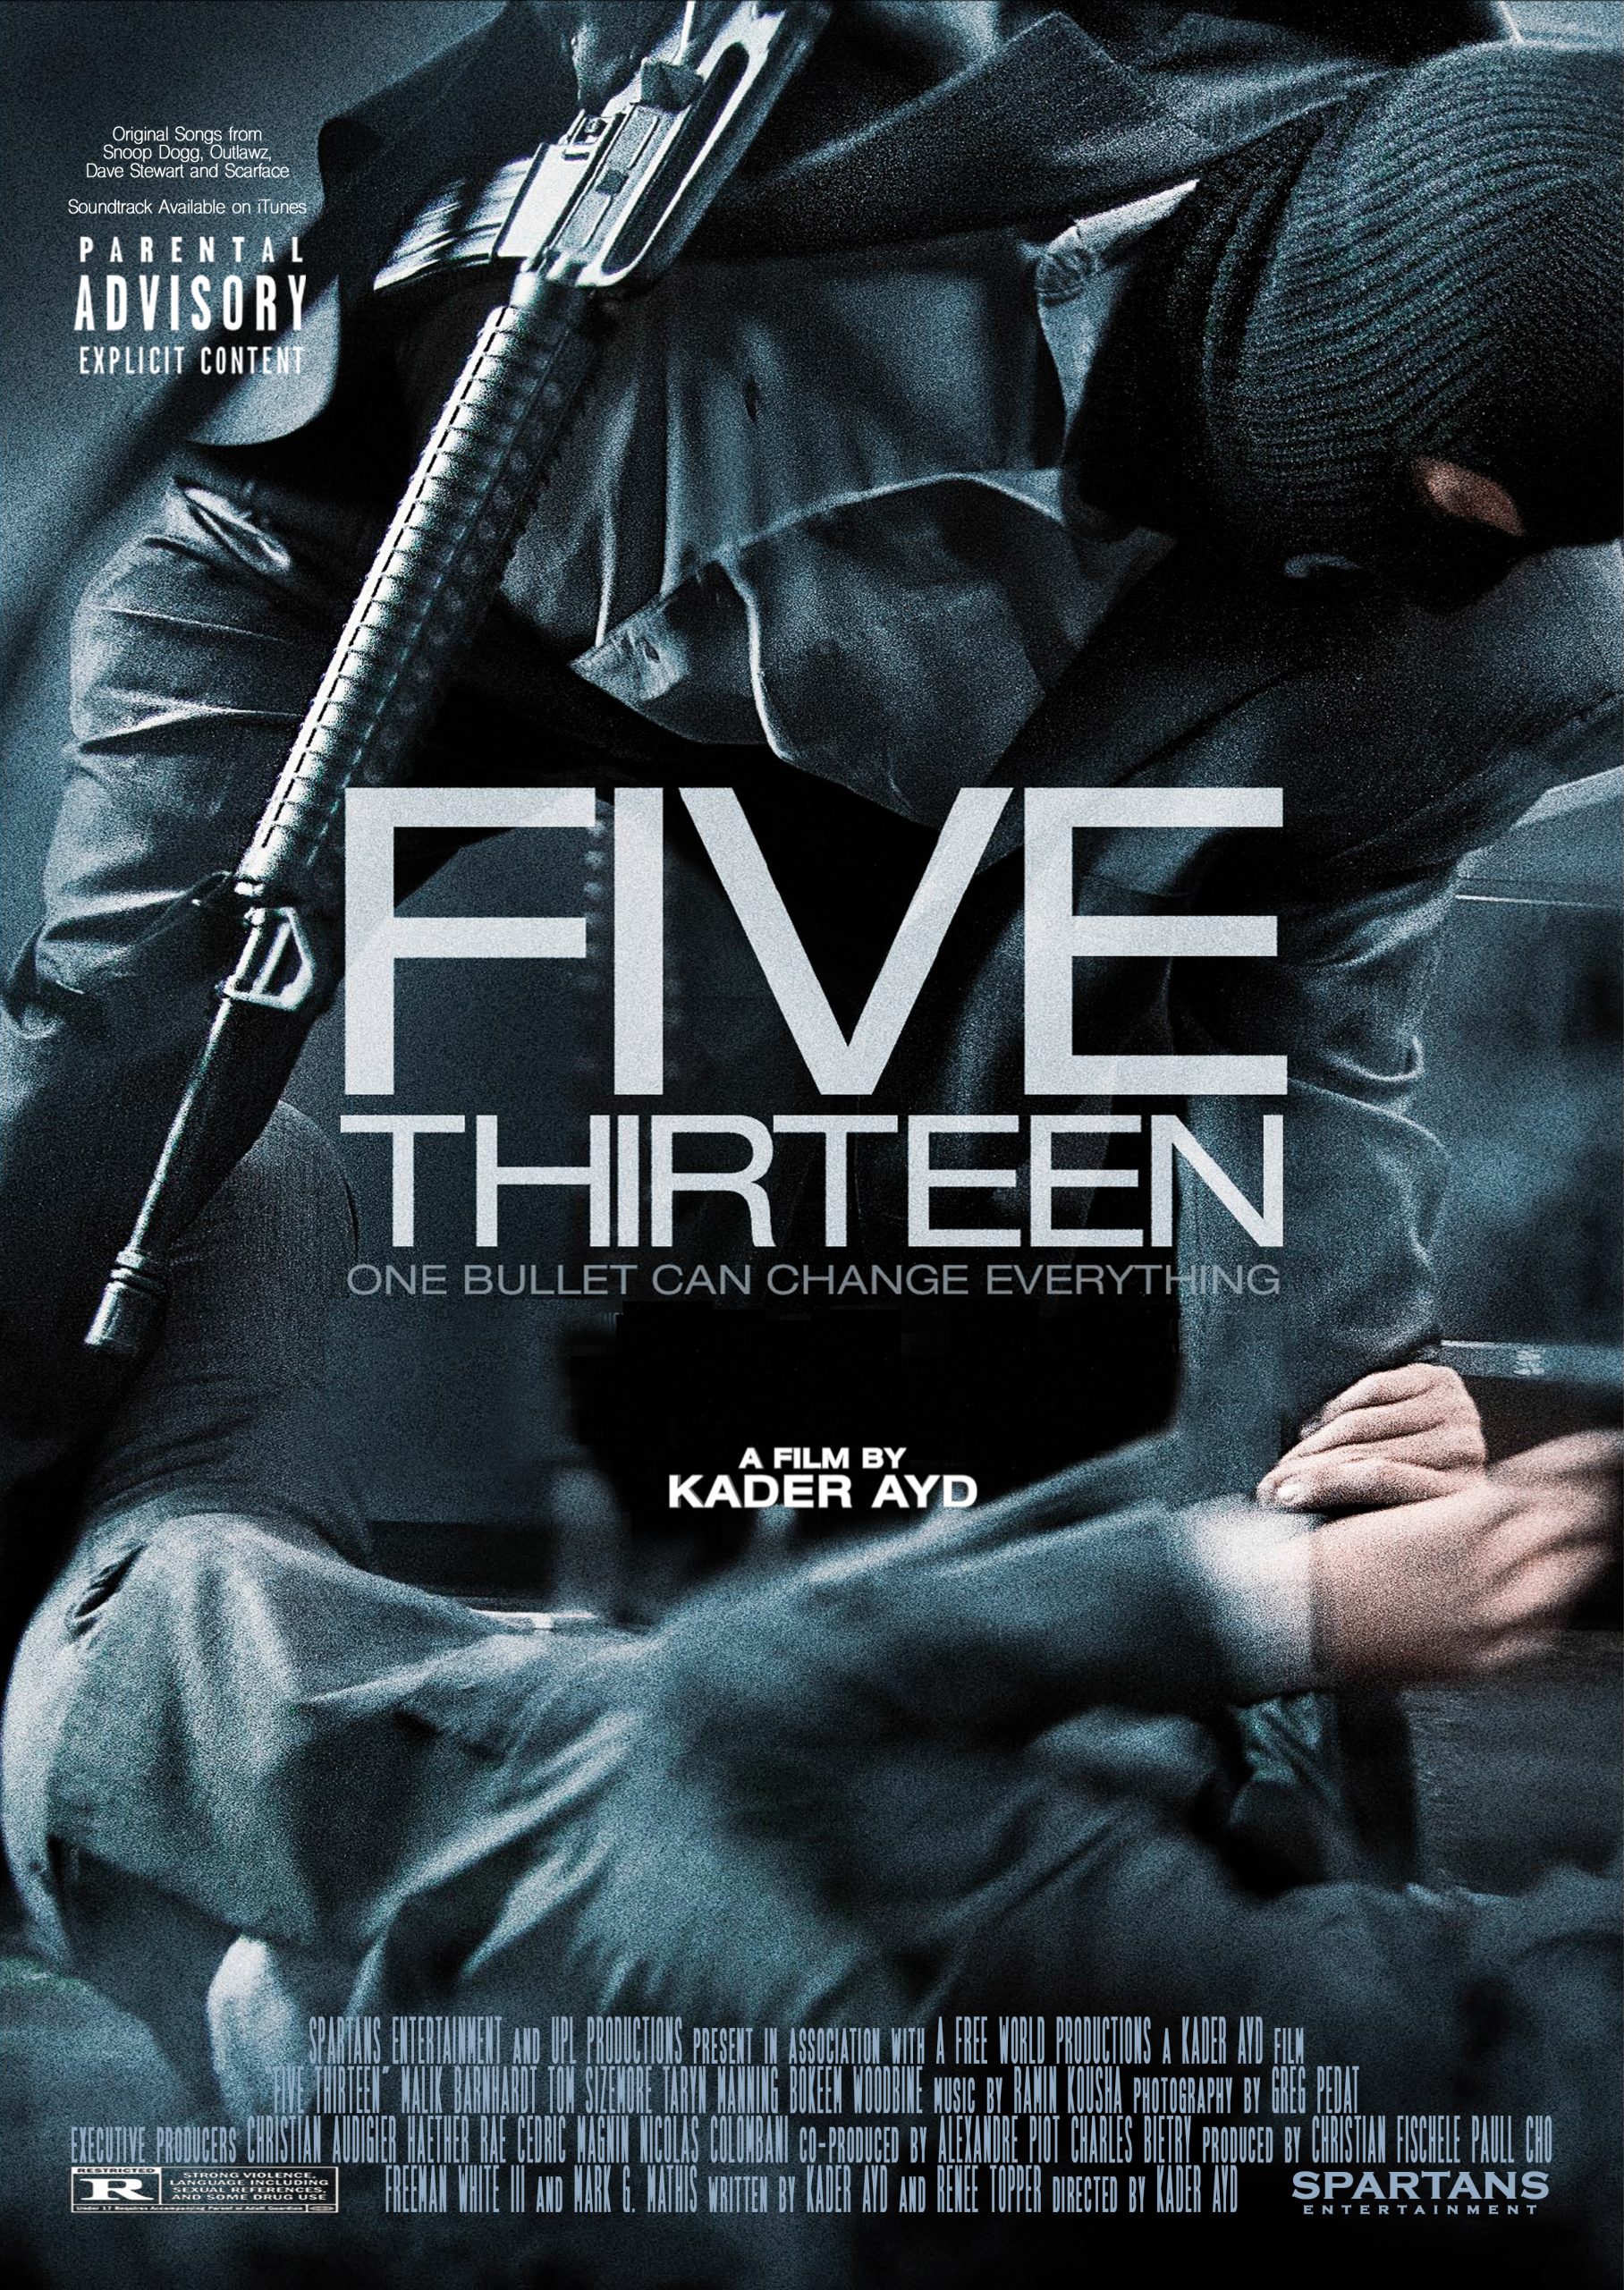 ดูหนังออนไลน์ฟรี FIVE THIRTEEN (2013) ล่าเดือด ปล้นดิบ หนังเต็มเรื่อง หนังมาสเตอร์ ดูหนังHD ดูหนังออนไลน์ ดูหนังใหม่